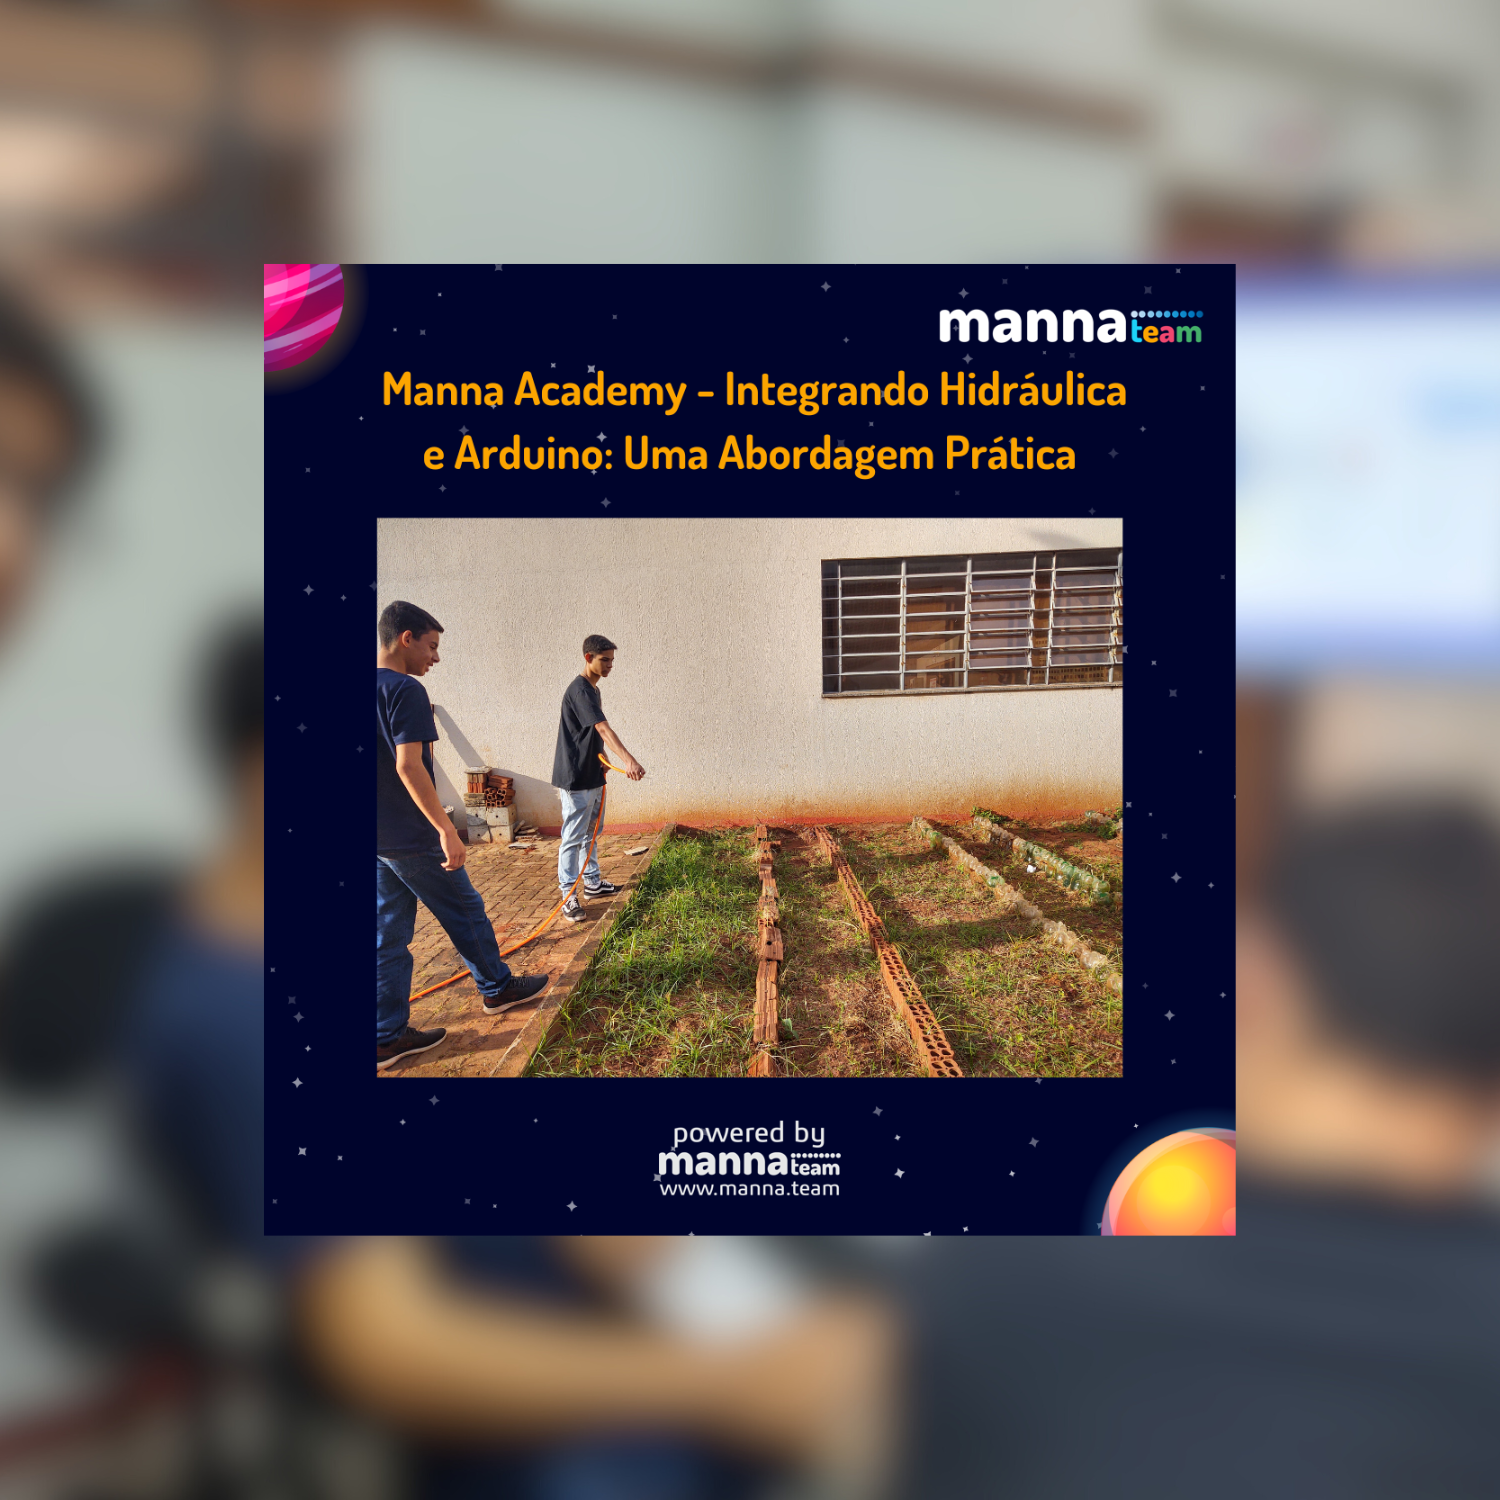 Manna Academy - Integrando Hidráulica e Arduino